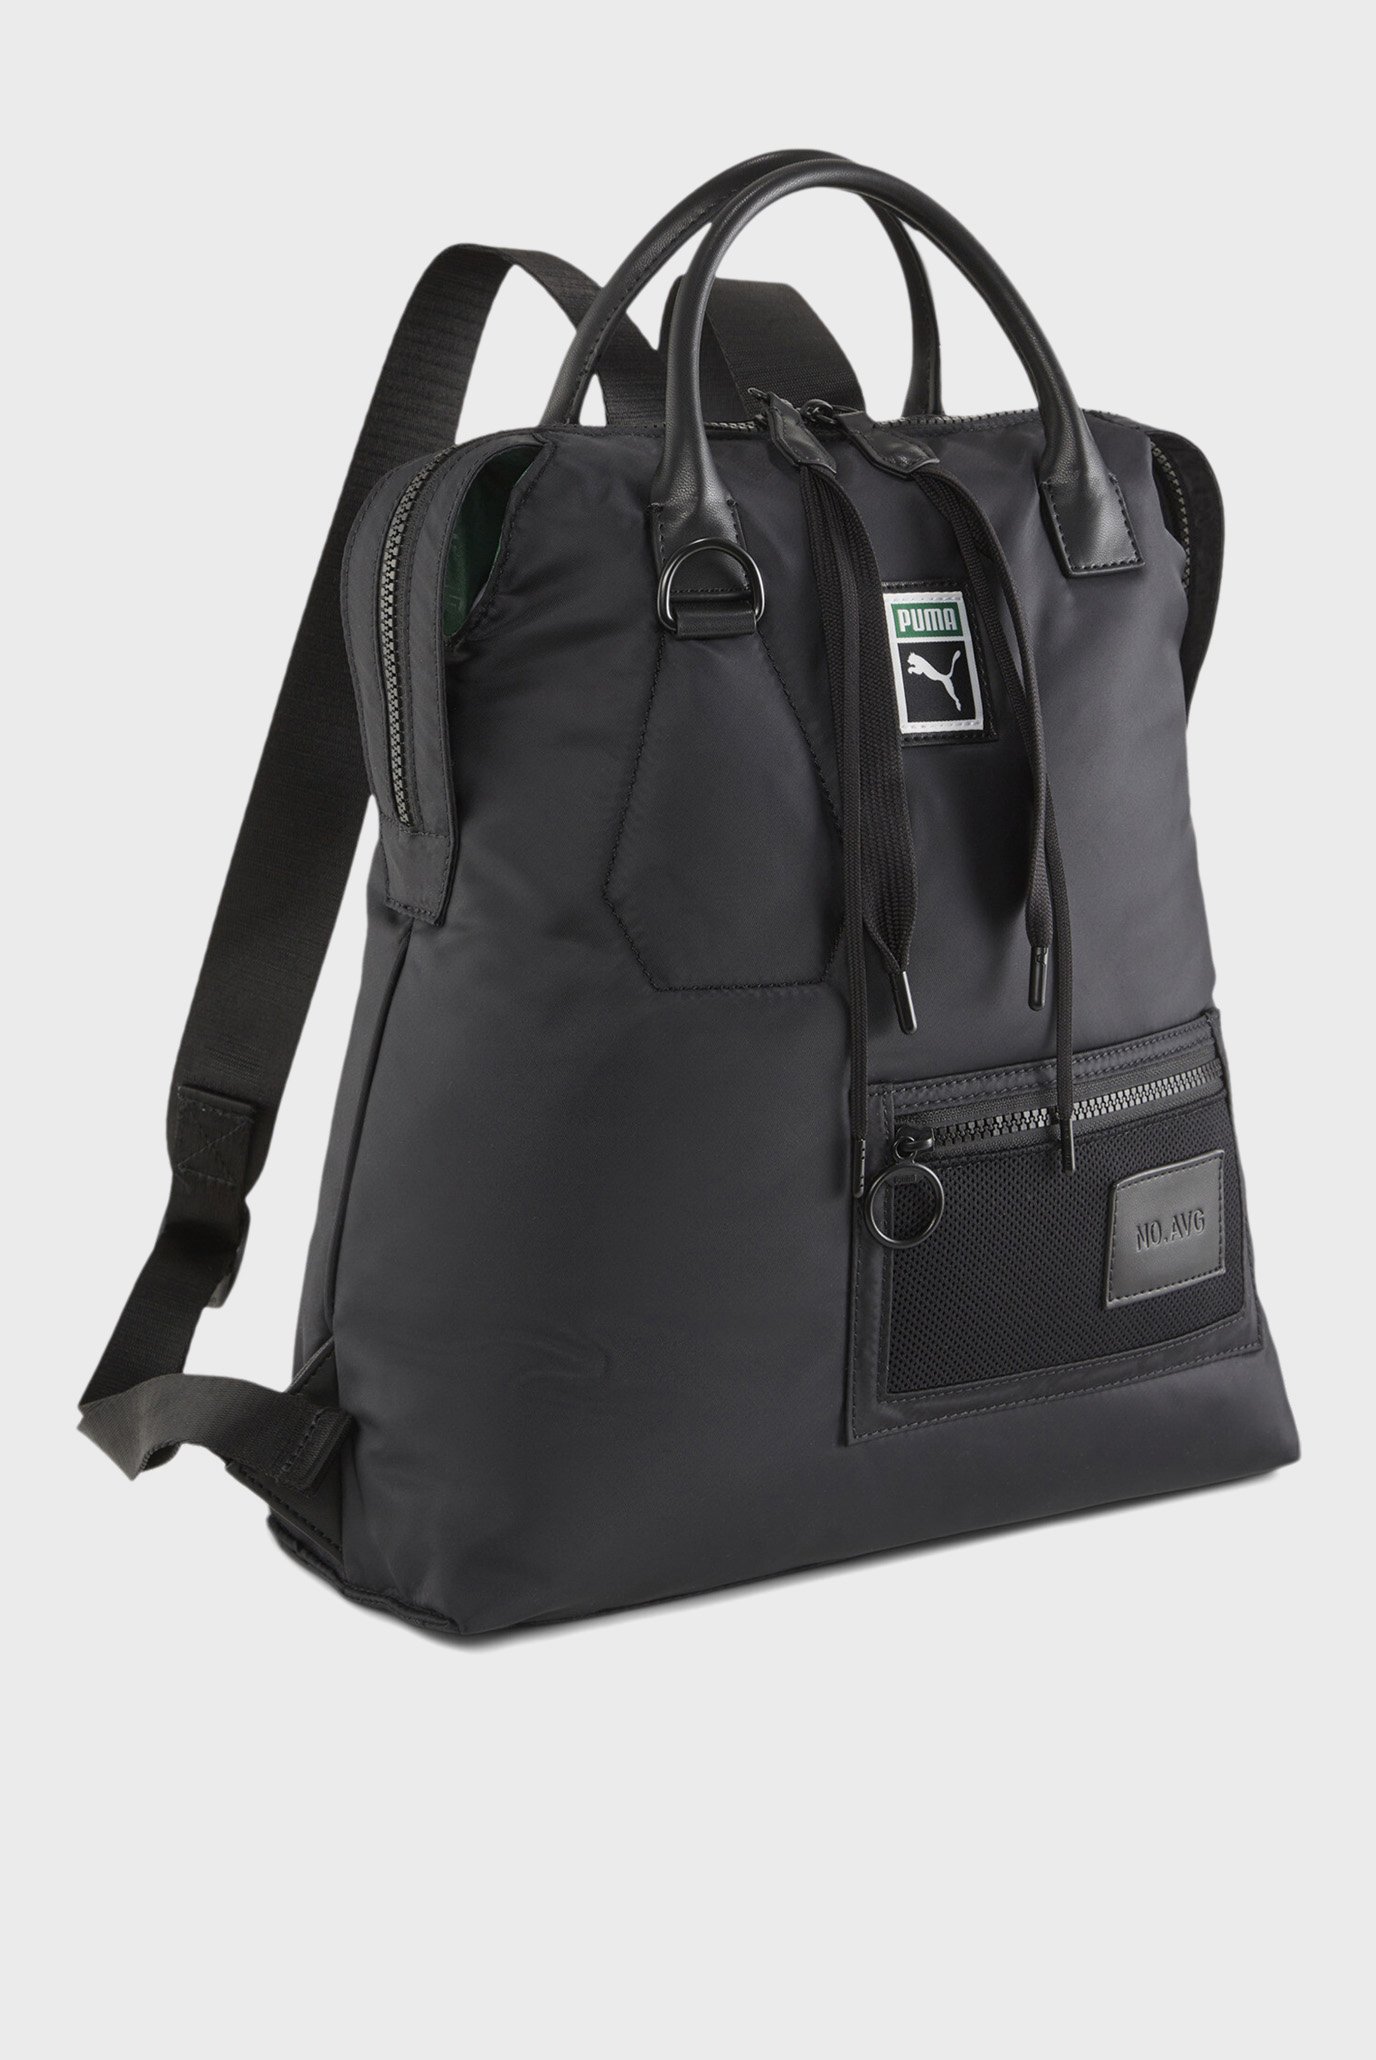 Чорний рюкзак NO.AVG Backpack 1